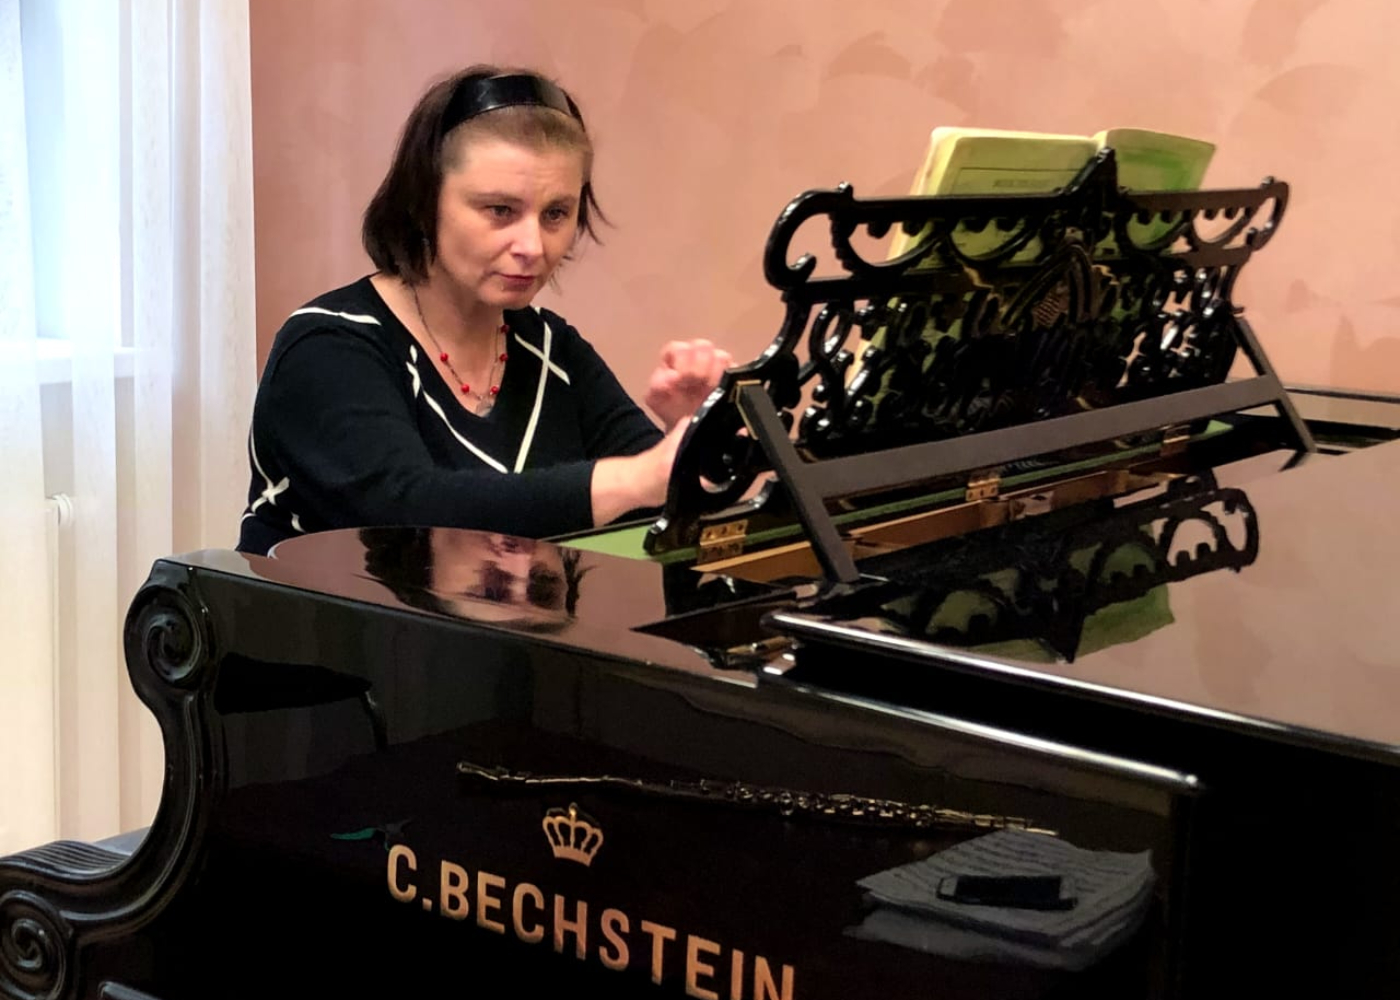 Педагог специальной музыкальной школы вошла в ТОП 150 лучших преподавателей России